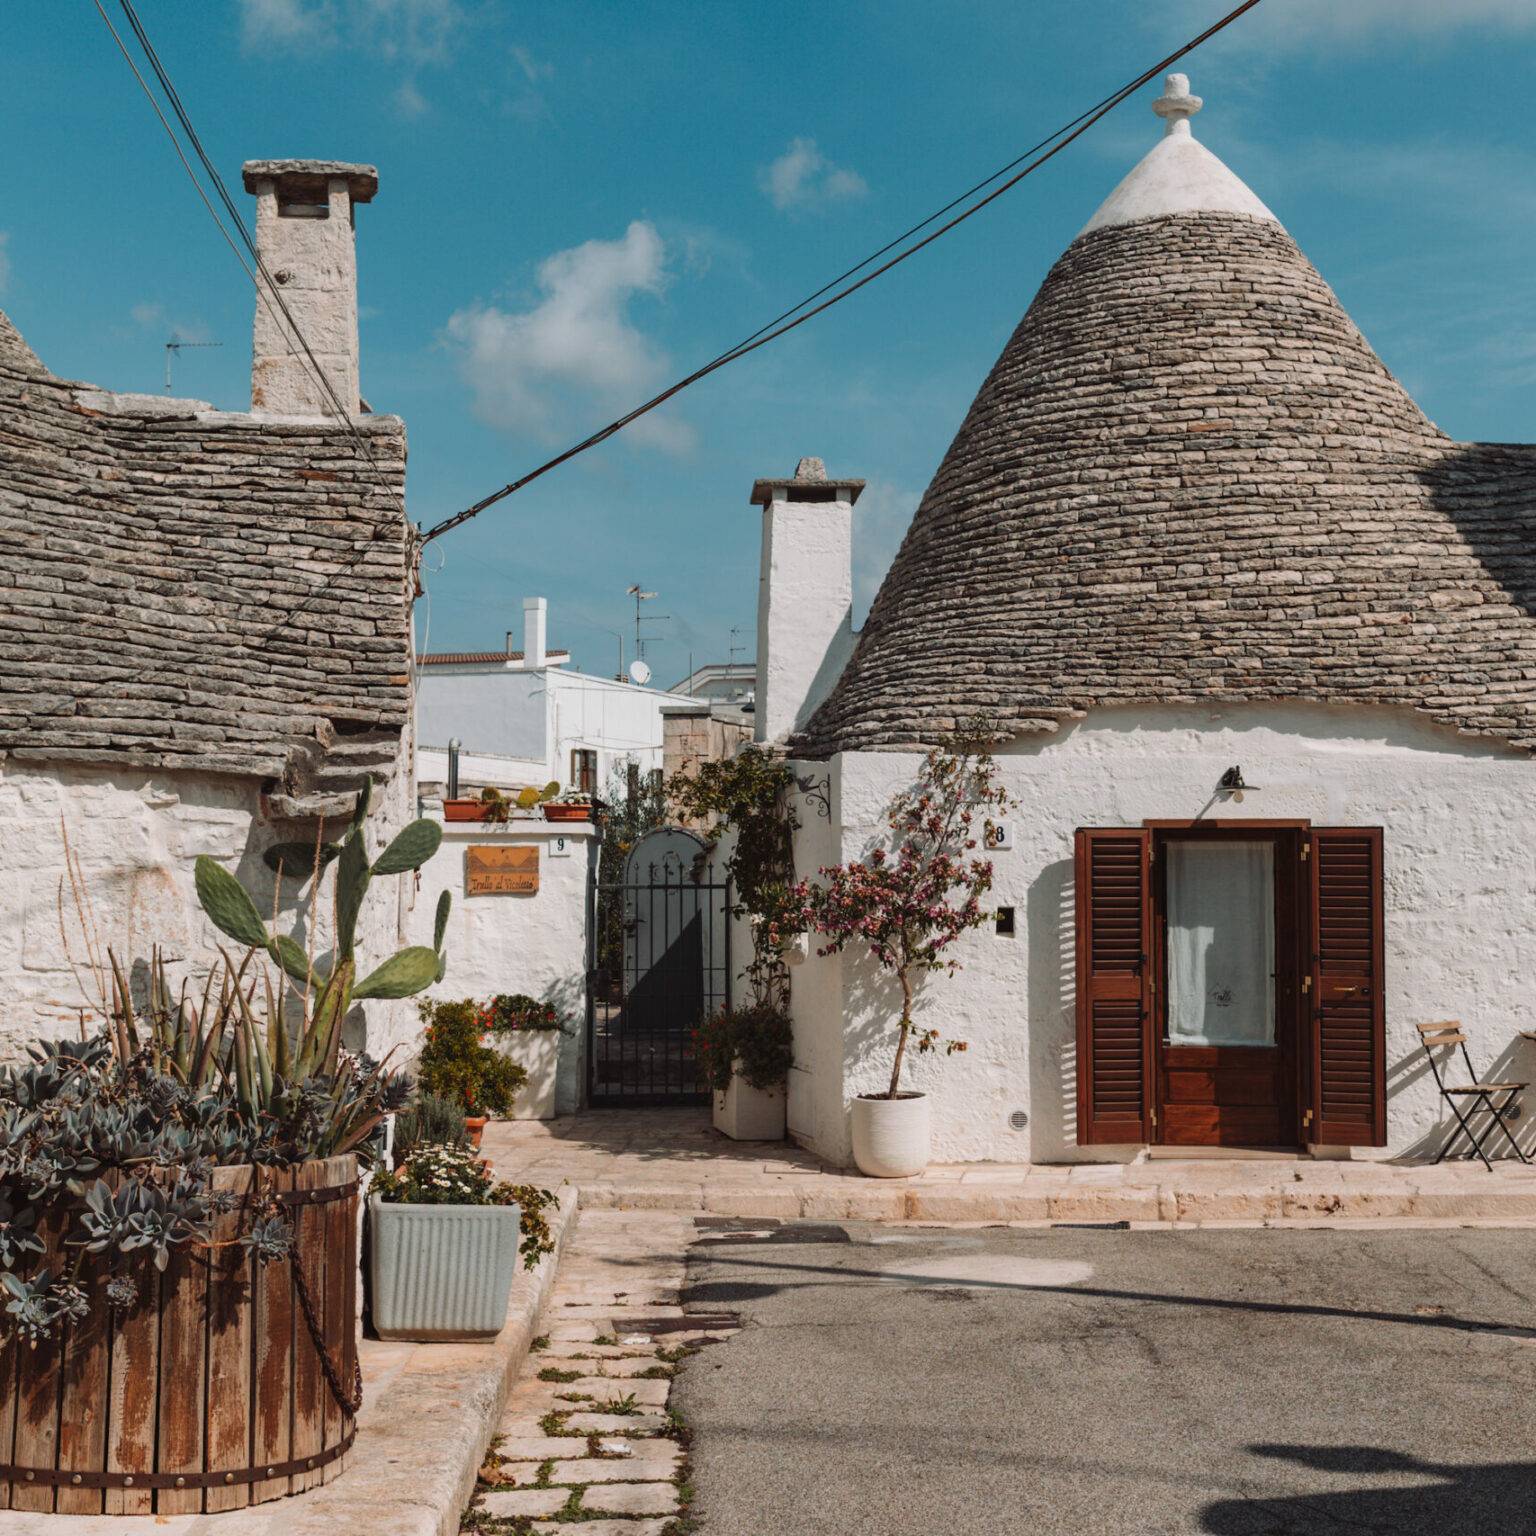 Kegelförmige Dächer sind das Markenzeichen der sogenannten Trullis, der traditionellen Steinhäuser Apuliens.